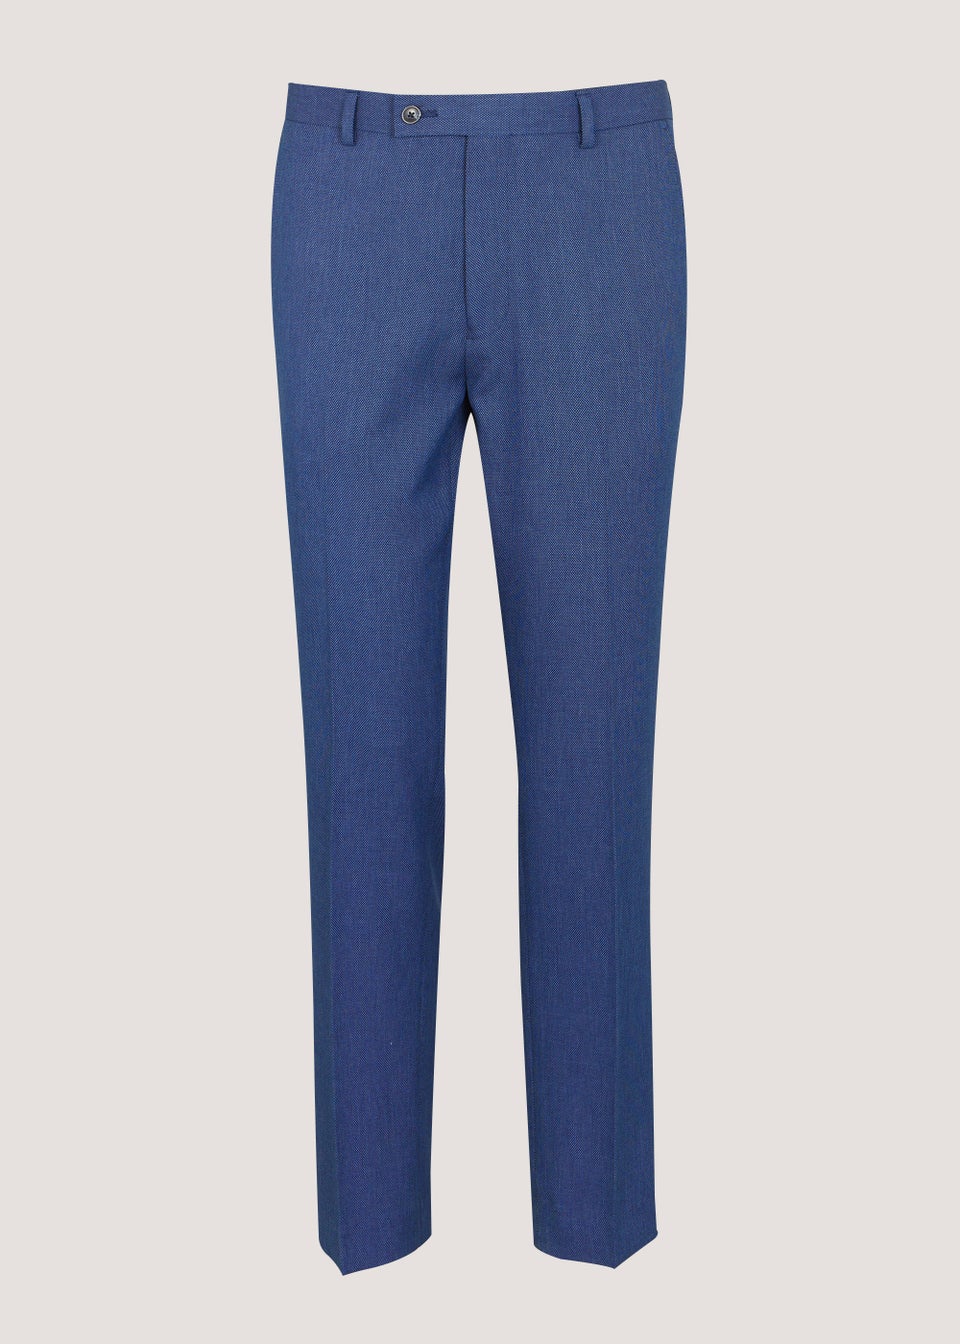 Taylor & Wright Douglas Blue Slim Fit Suit Trousers